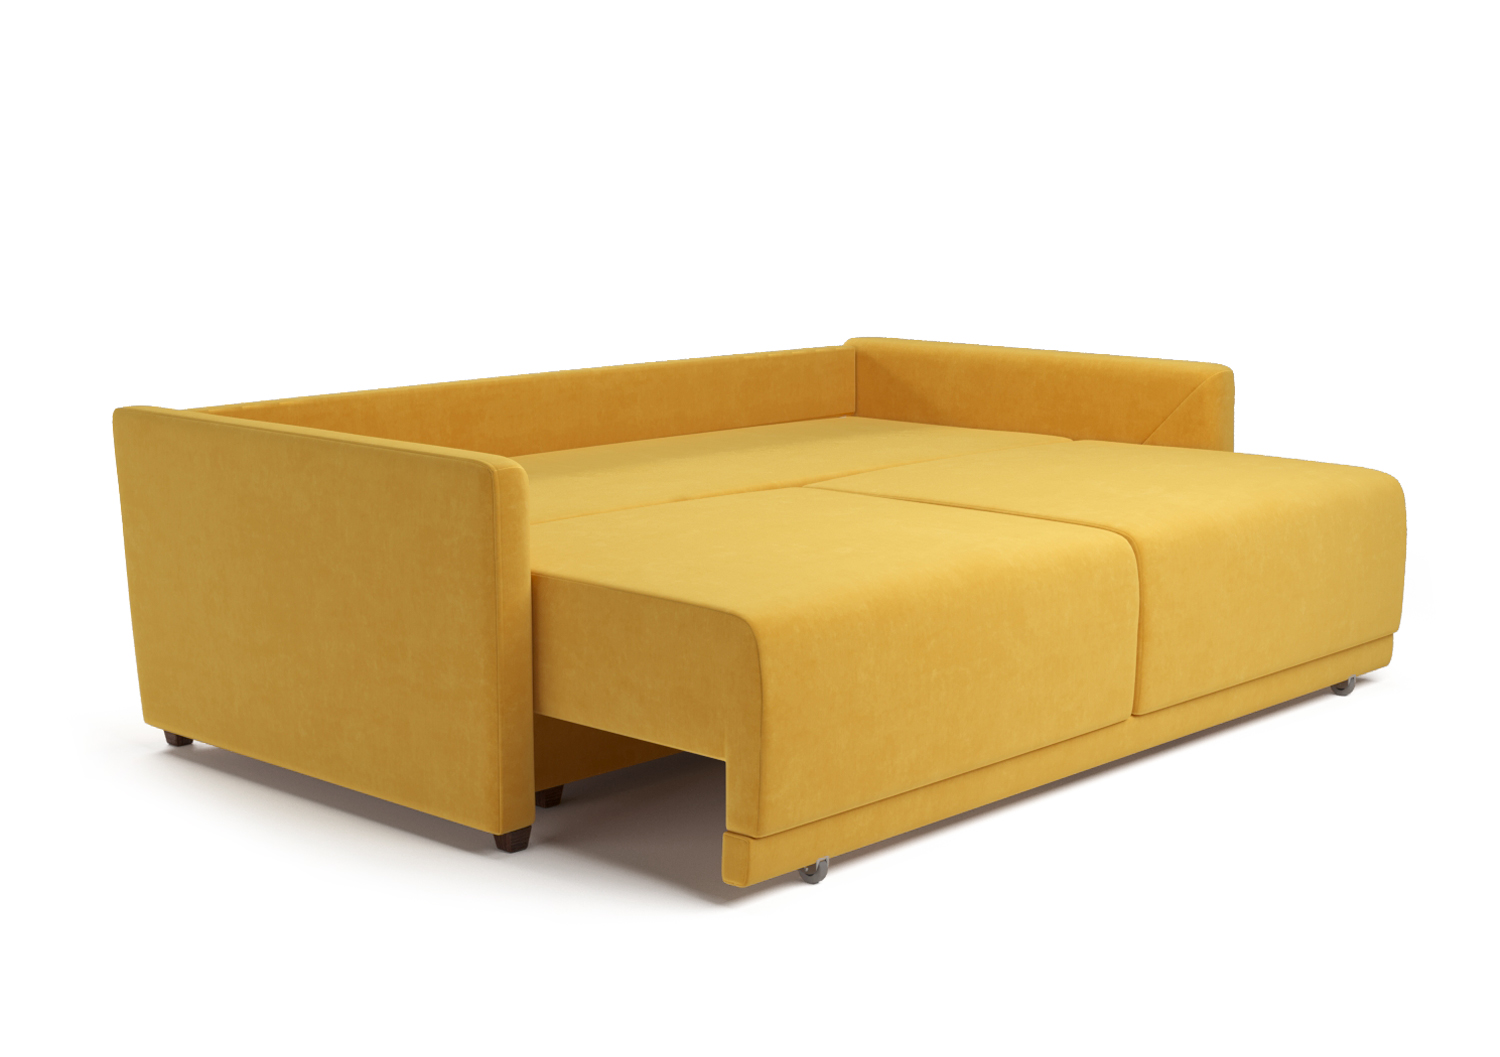 Адель, прямой диван, Miss 83 ткань Шенилл цвет Желтый механизм трансформации Еврокнижка изображение 5